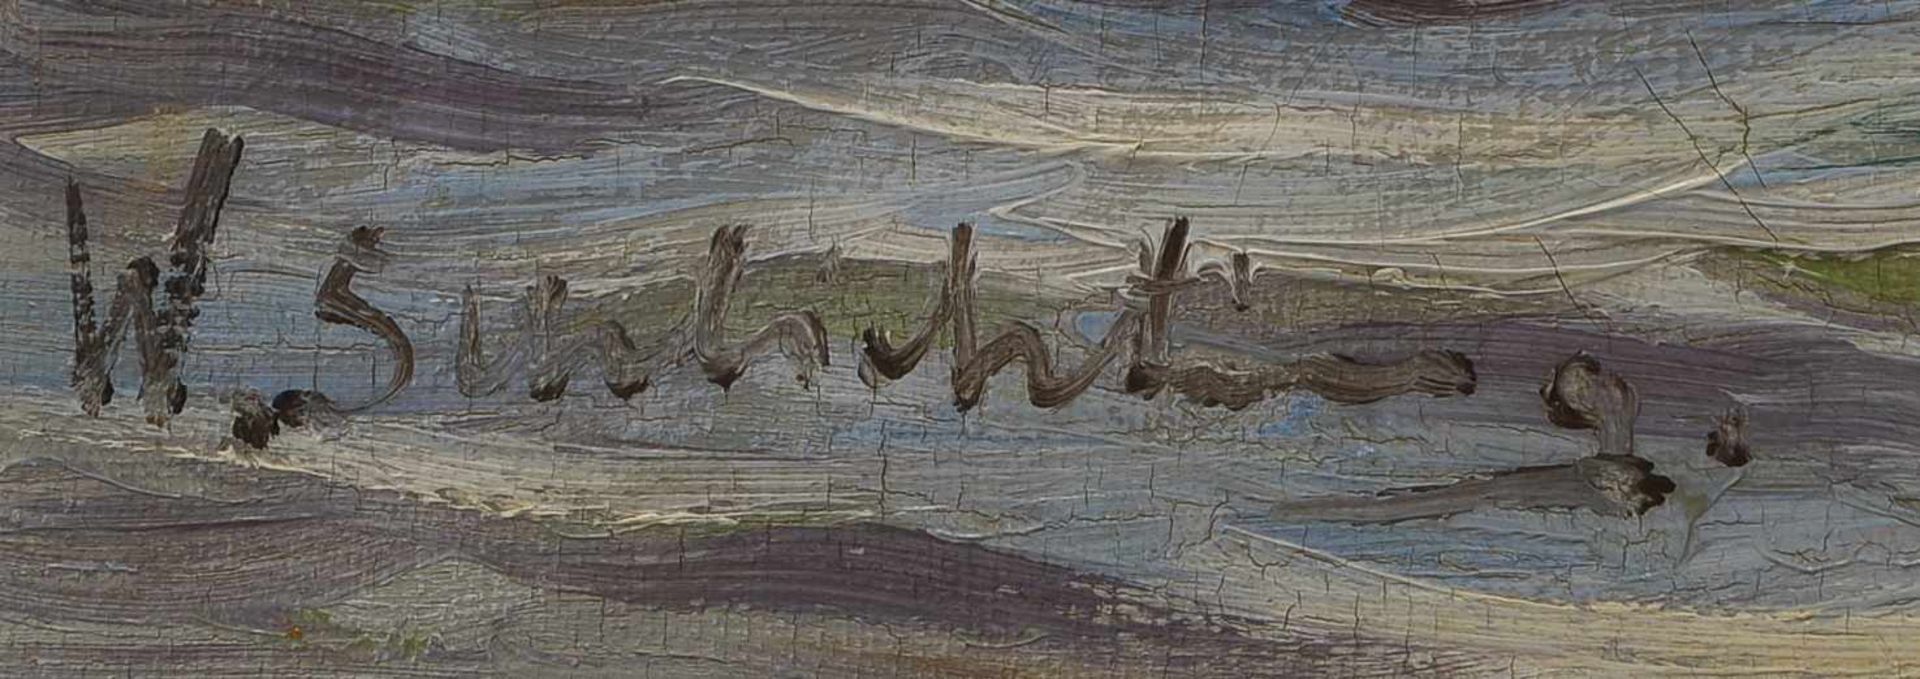 Schlichtig, Waldemar (1896 - 1970), 'Am Hafen', Öl/Lw, unten links signiert; Bildmaße 55 x 68 cm, - Bild 2 aus 3